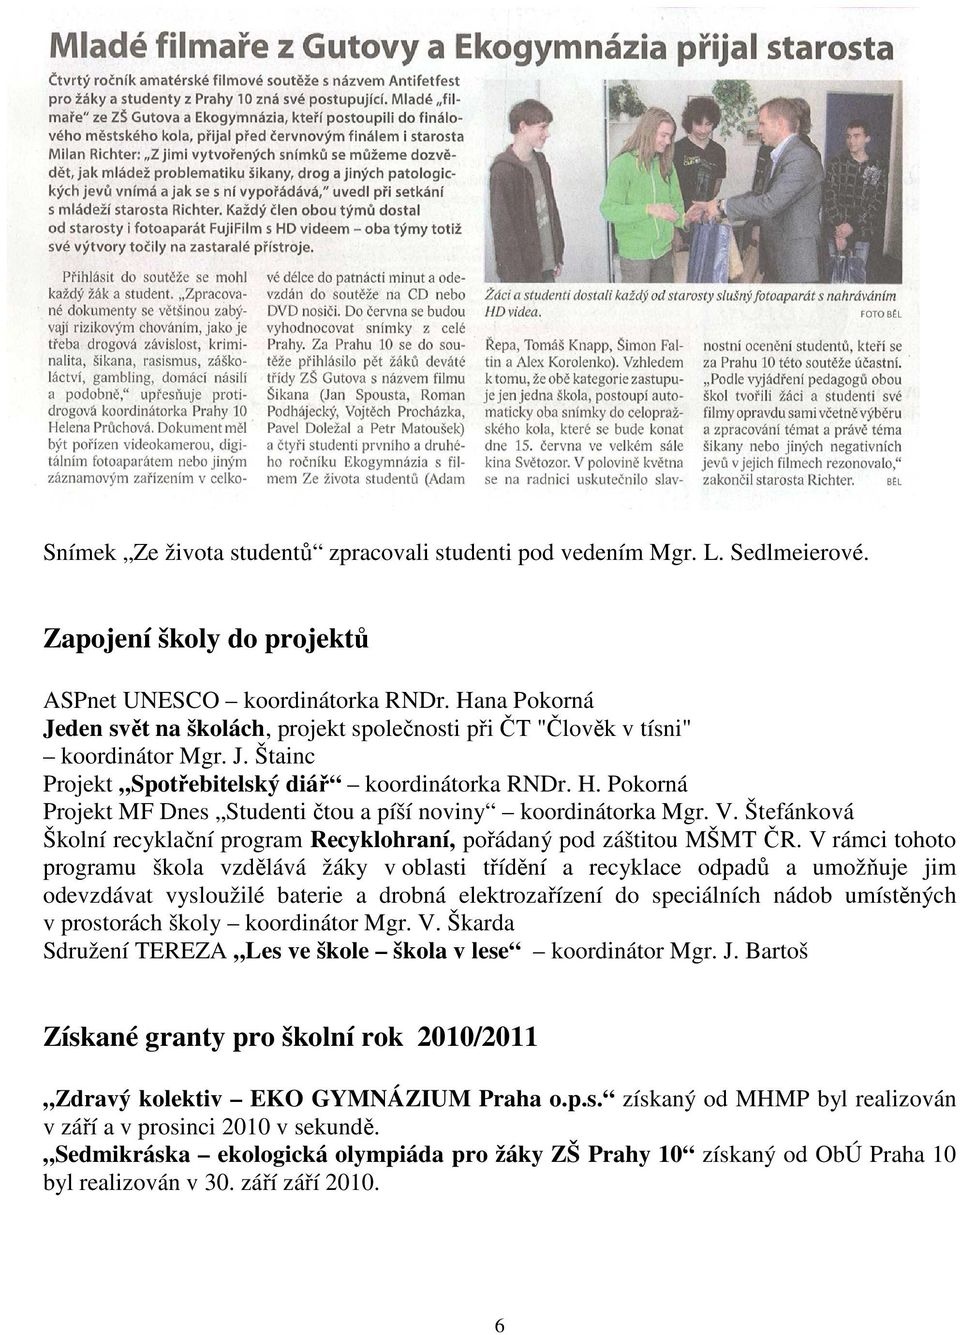 Pokorná Projekt MF Dnes Studenti čtou a píší noviny koordinátorka Mgr. V. Štefánková Školní recyklační program Recyklohraní, pořádaný pod záštitou MŠMT ČR.